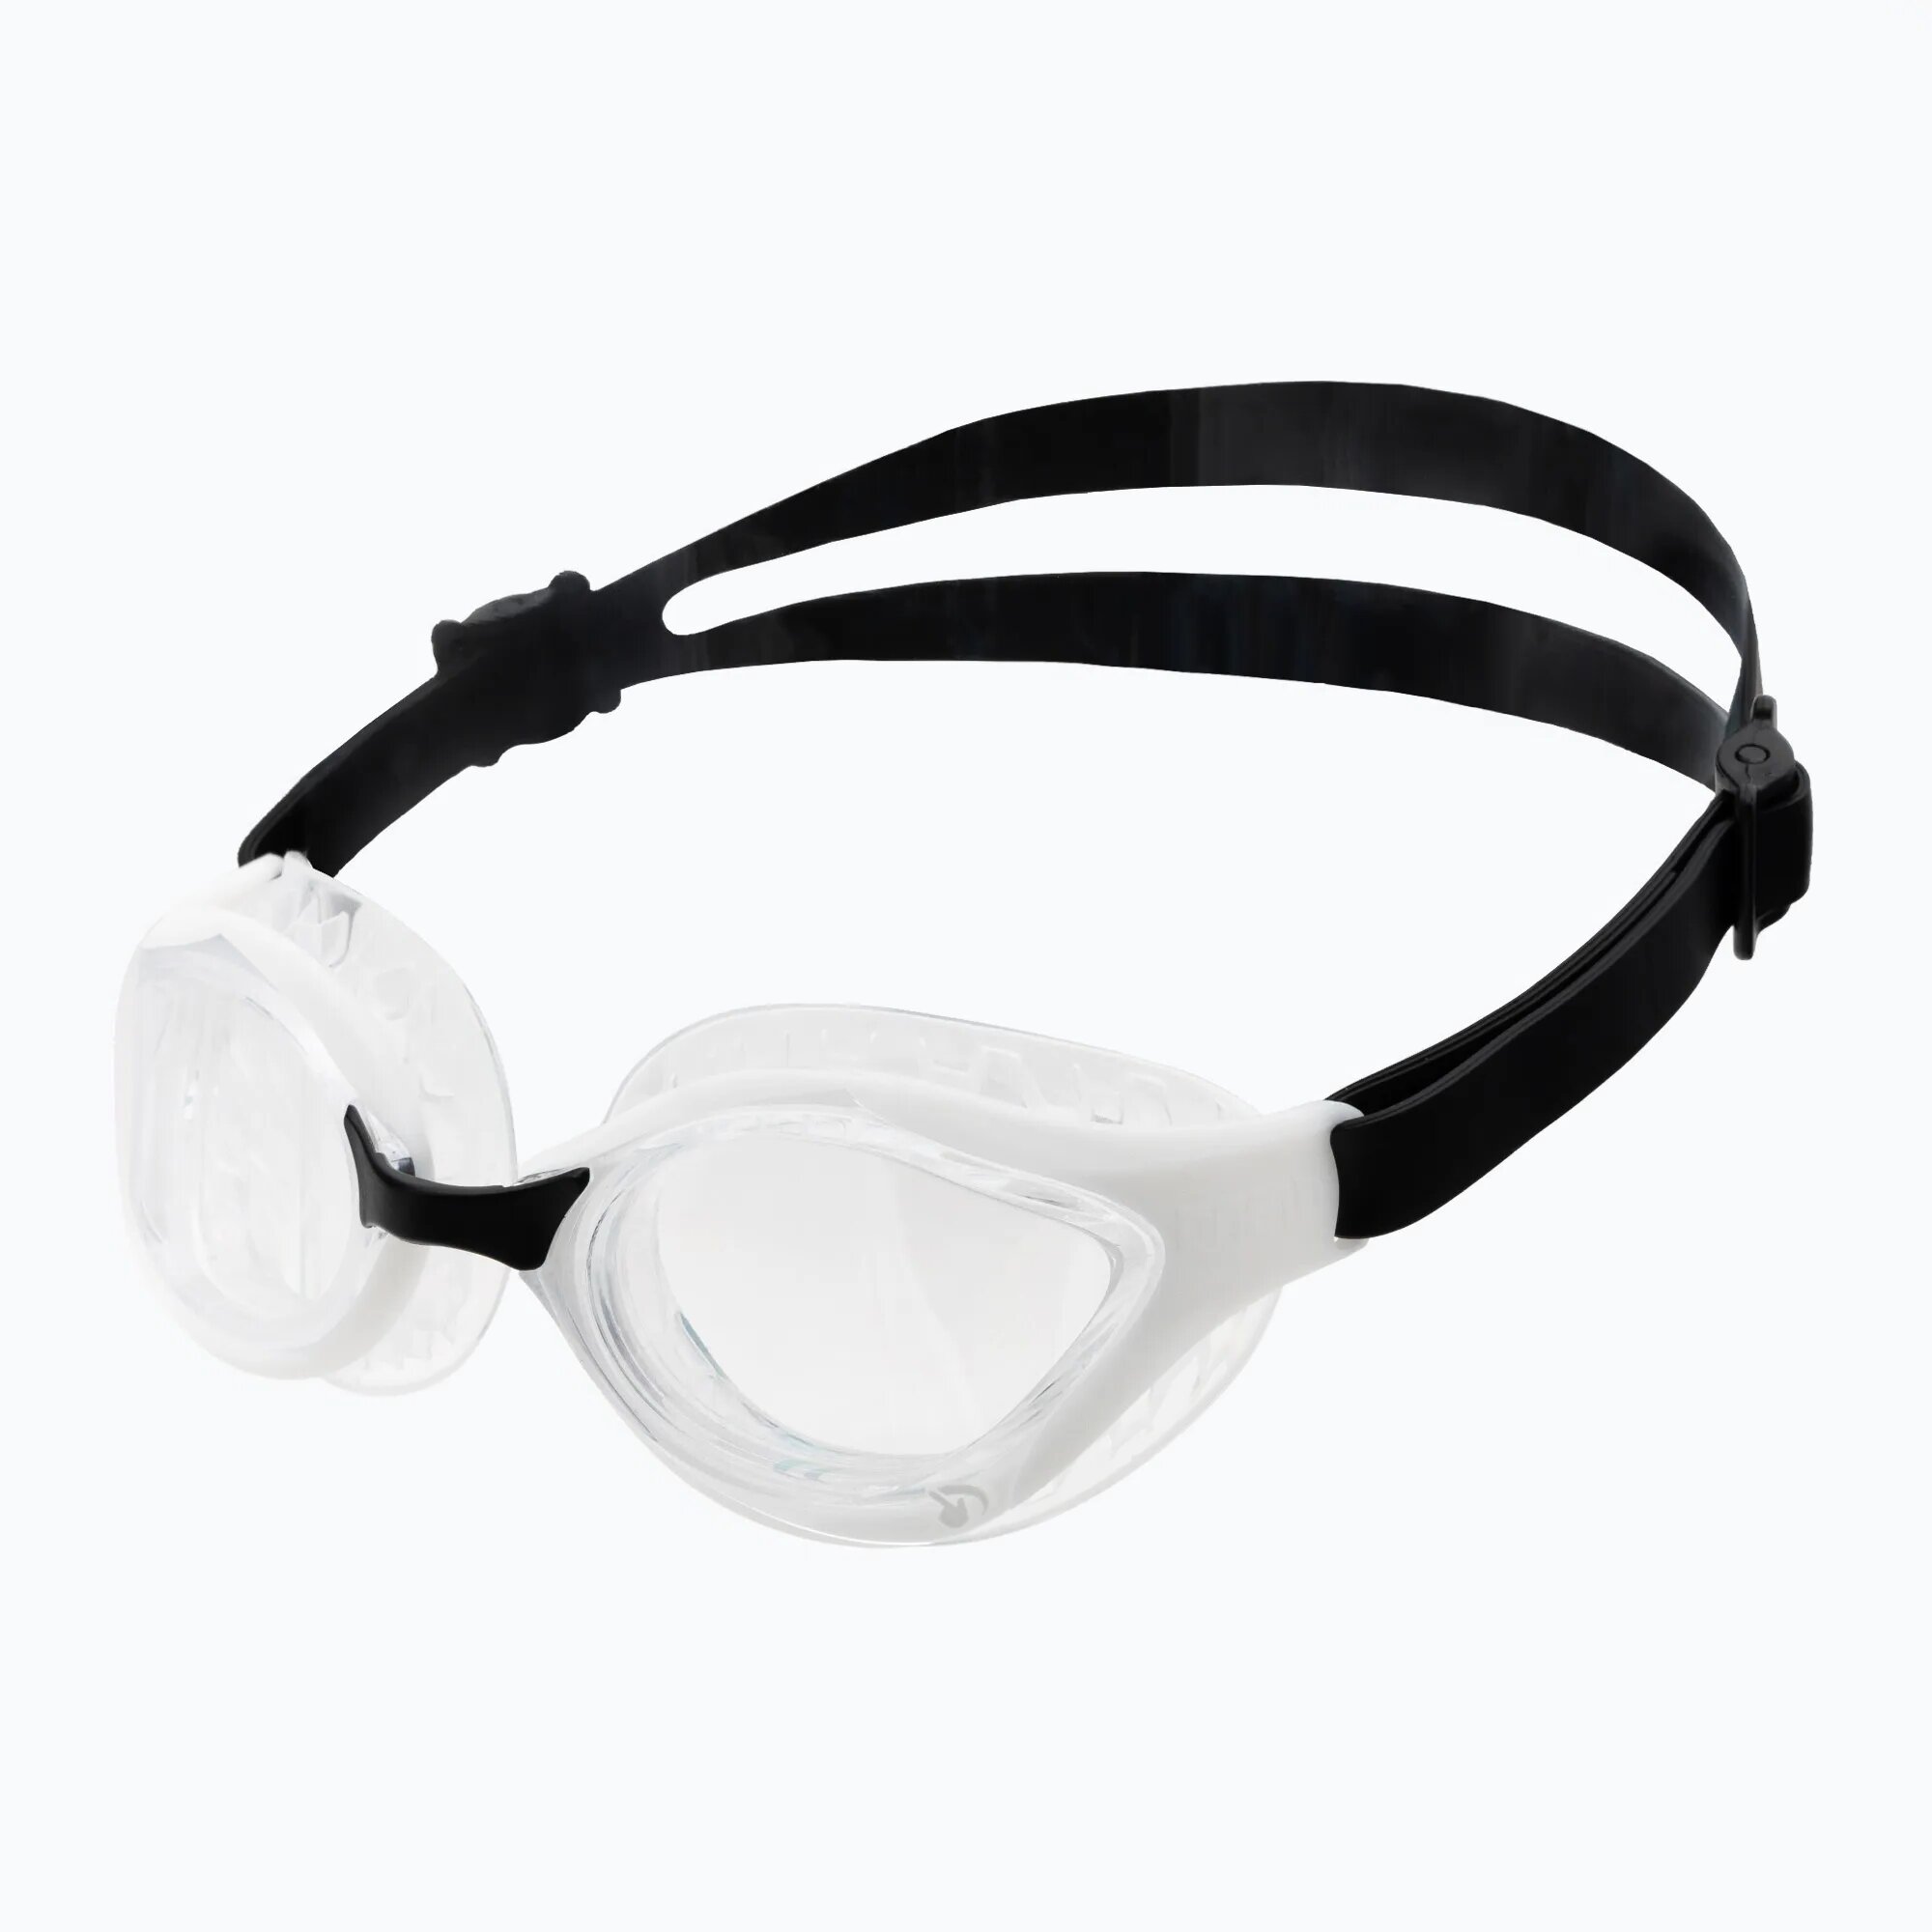 Swipe Anti-Fog, La Nueva Techologia Antivaho Para Las Gafas de Natacion